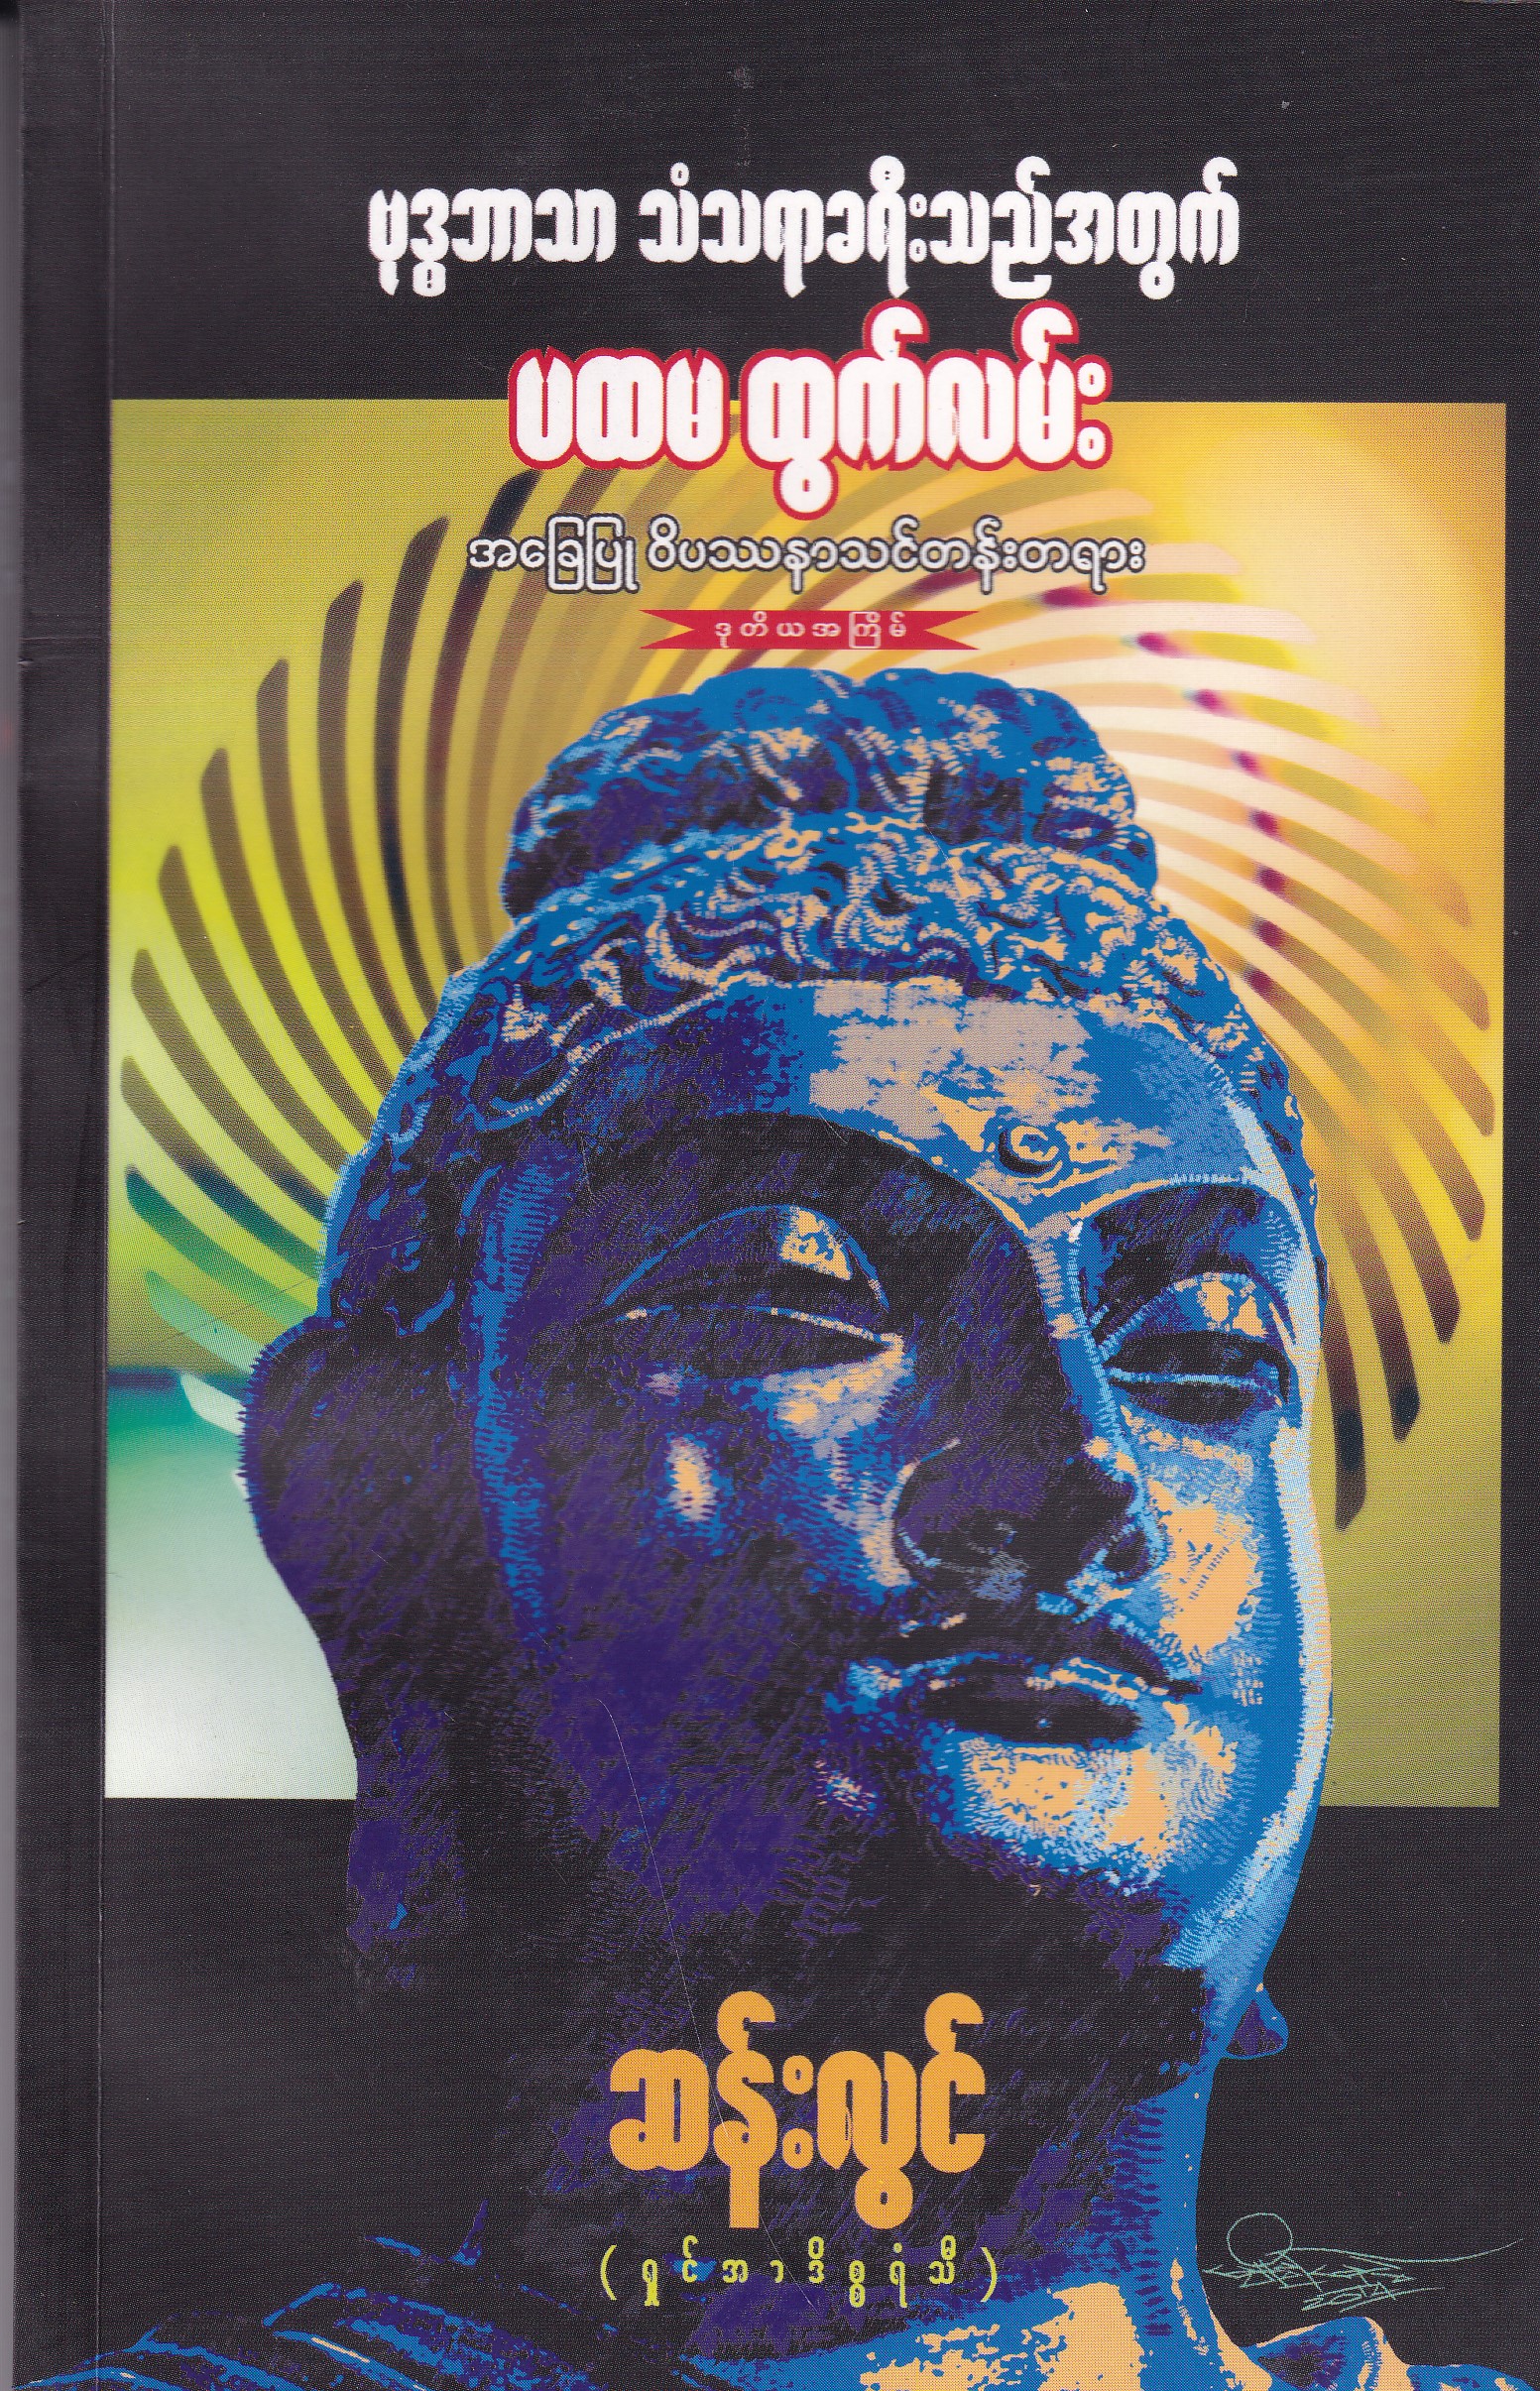 ဗုဒ္ဓဘာသာ သံသရာခရီးသည်အတွက် ပထမထွက်လမ်း